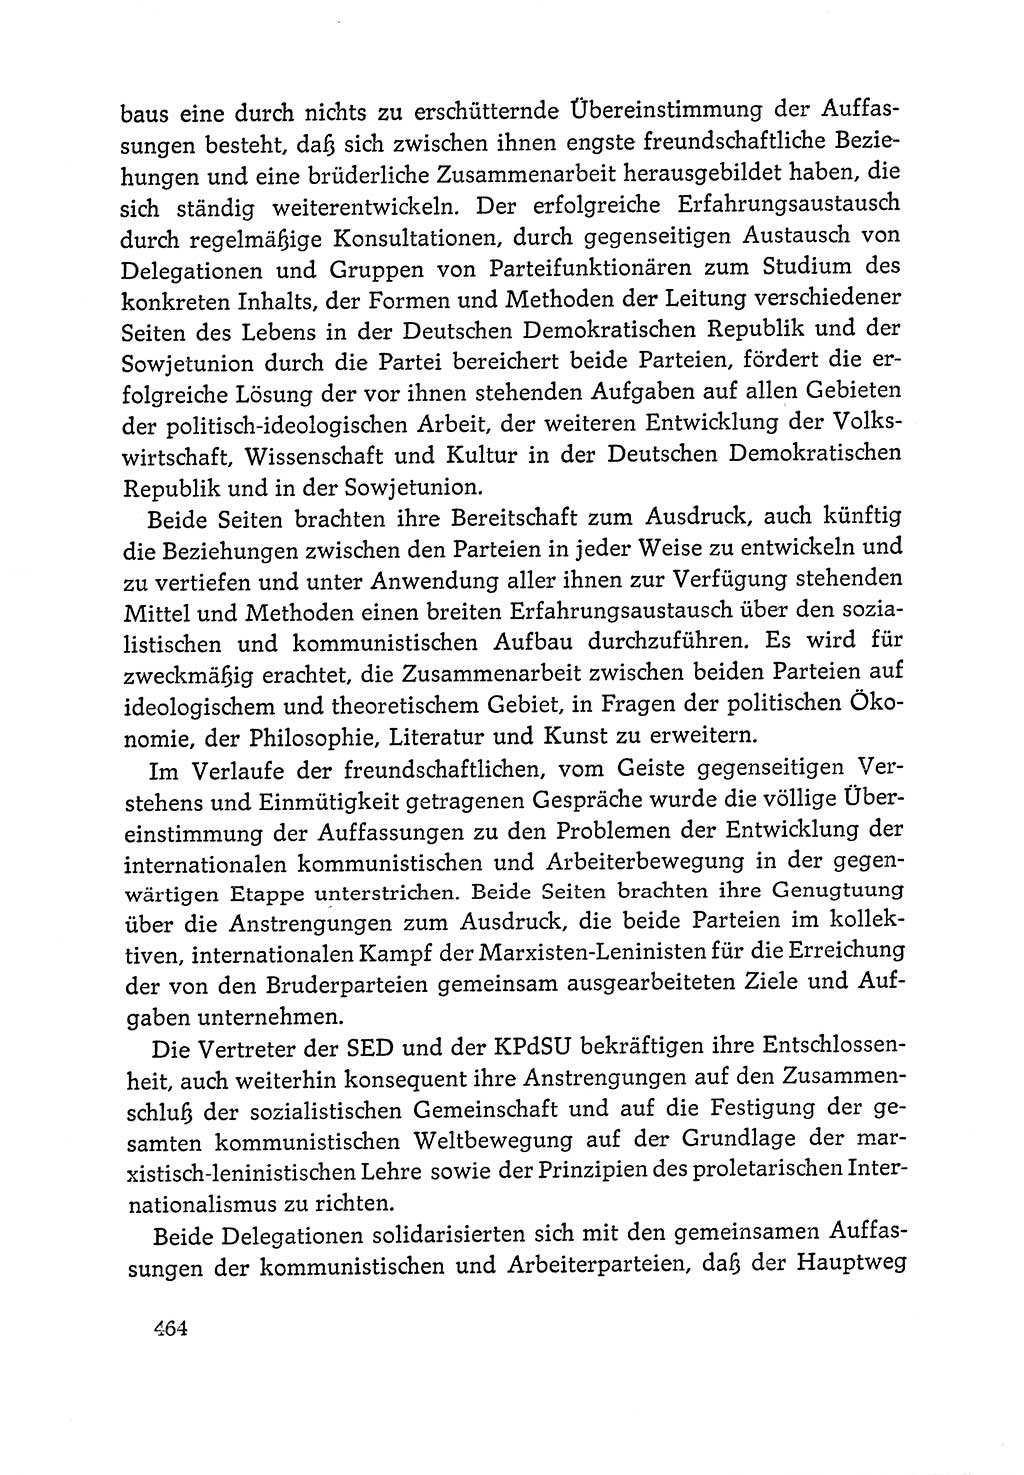 Dokumente der Sozialistischen Einheitspartei Deutschlands (SED) [Deutsche Demokratische Republik (DDR)] 1964-1965, Seite 464 (Dok. SED DDR 1964-1965, S. 464)